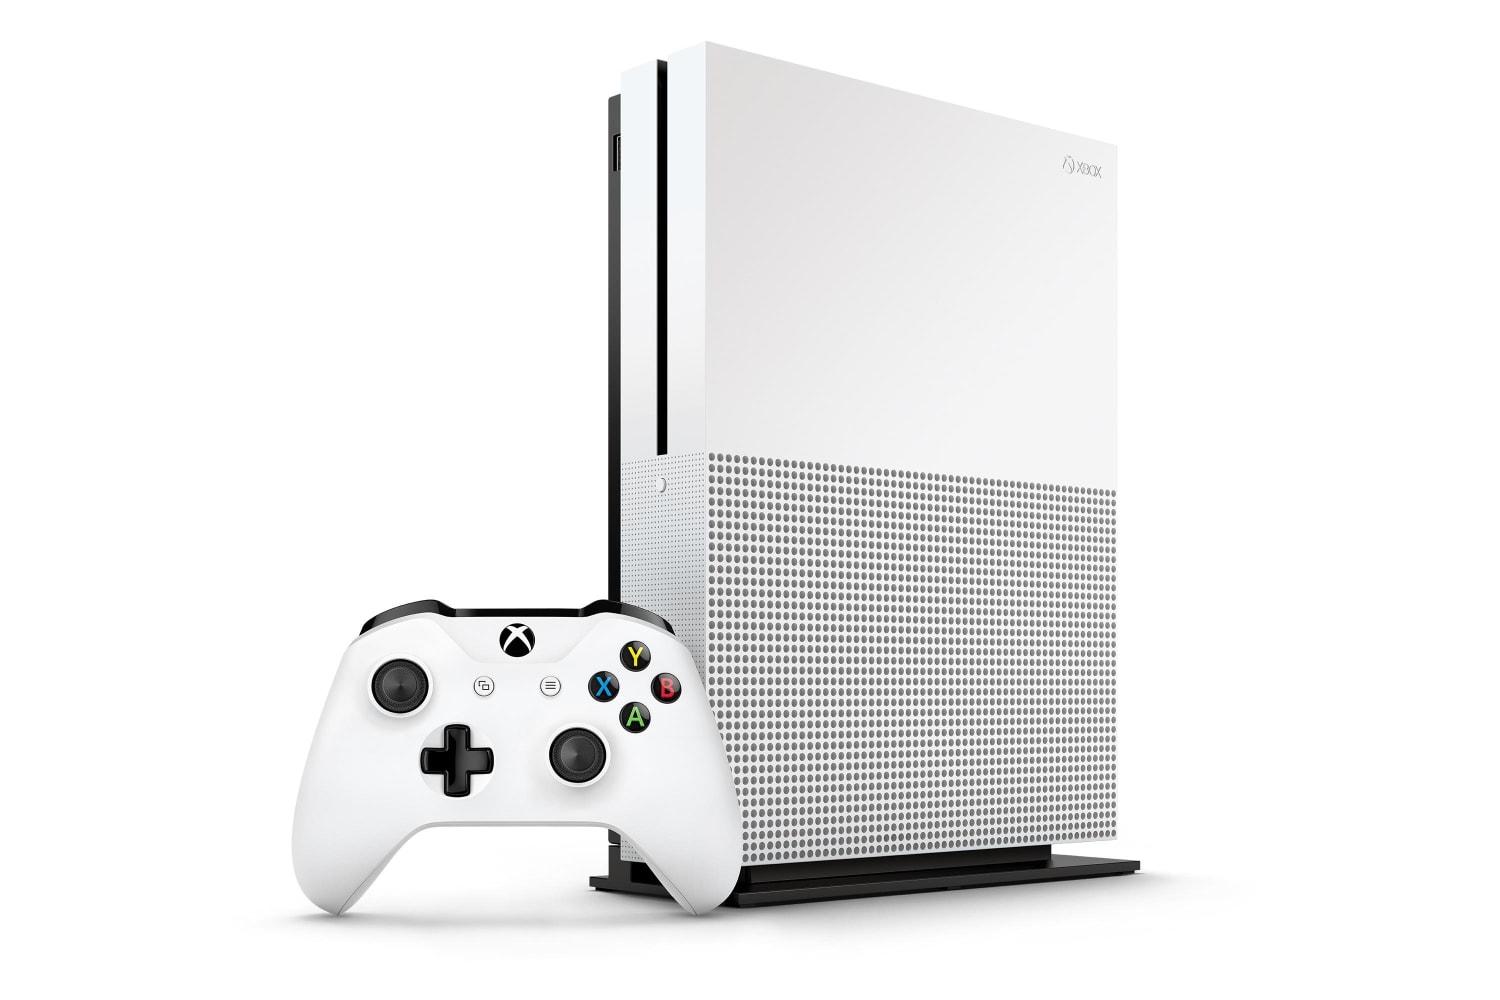 Xbox One S: Las 7 mejoras que necesita la consola